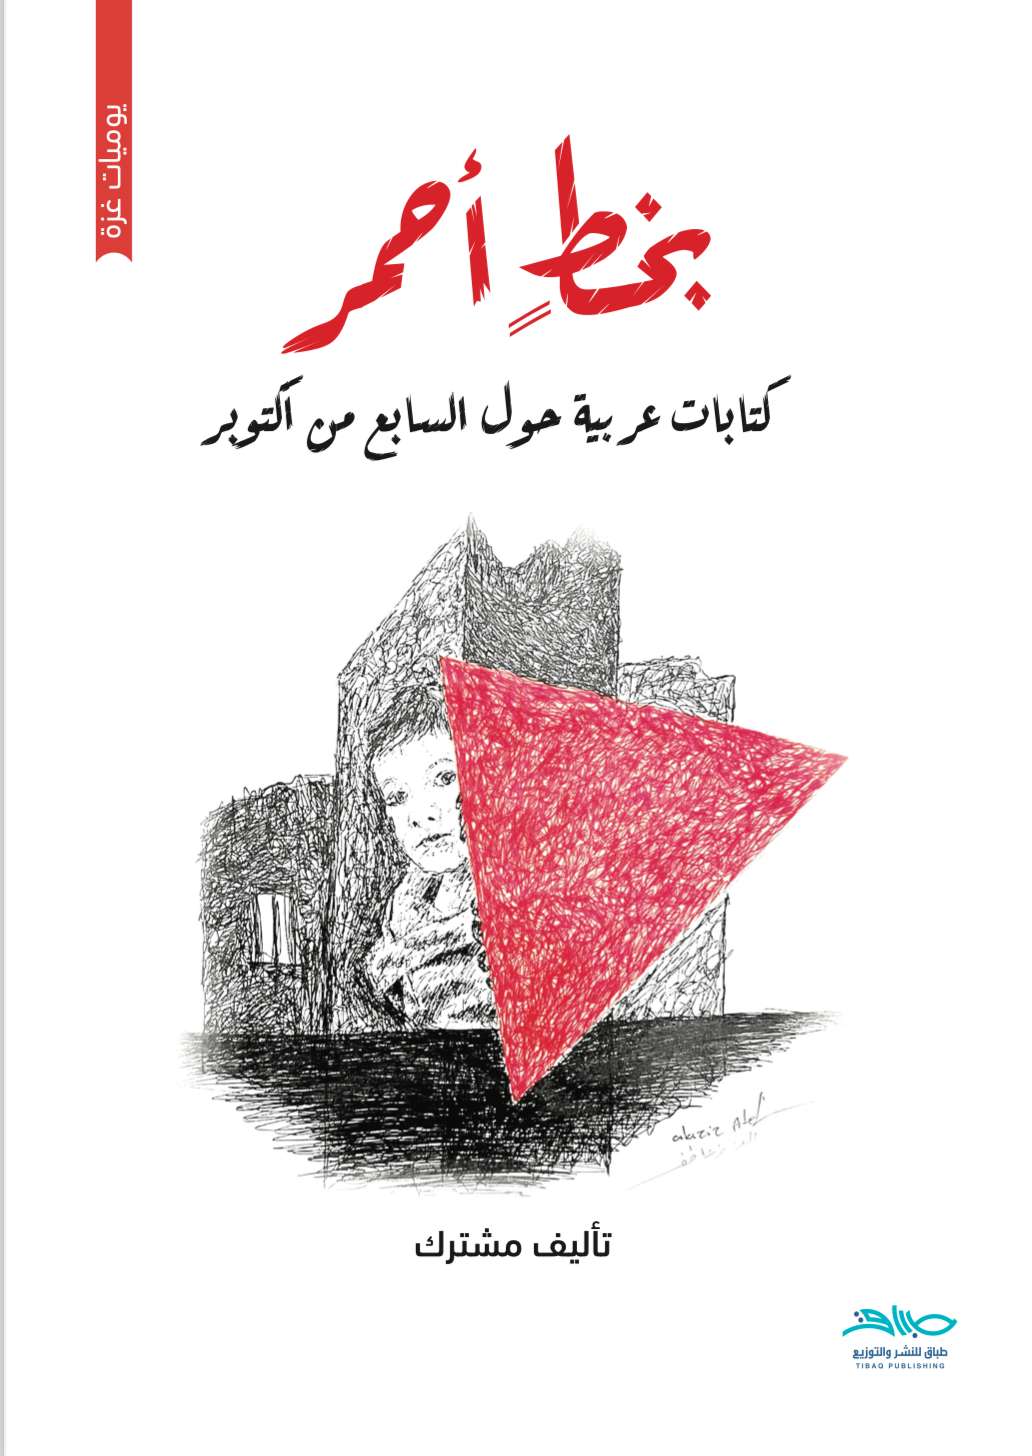 بخط أحمر: كتابات عربية حول السابع من أكتوبر